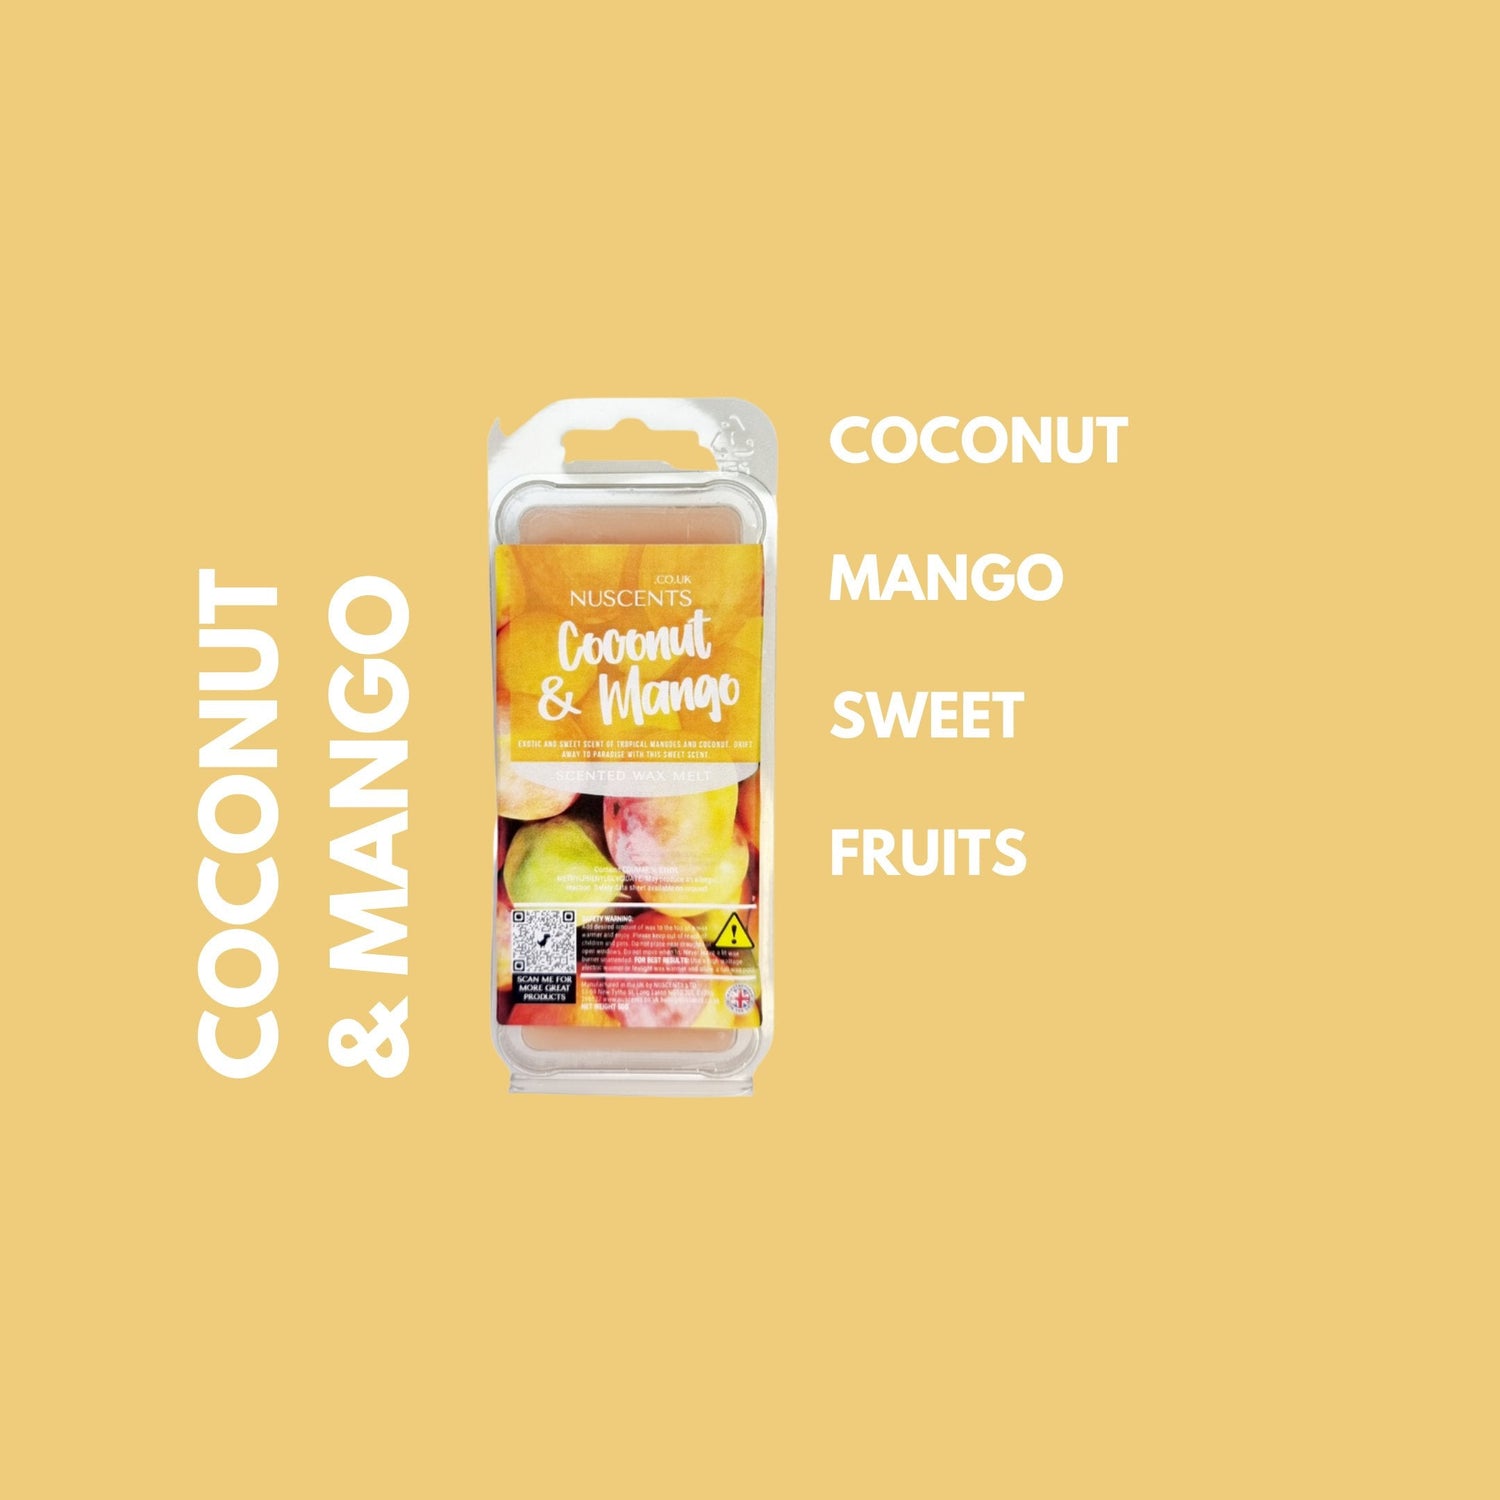 Coconut & Mango Wax Melt Scent Notes